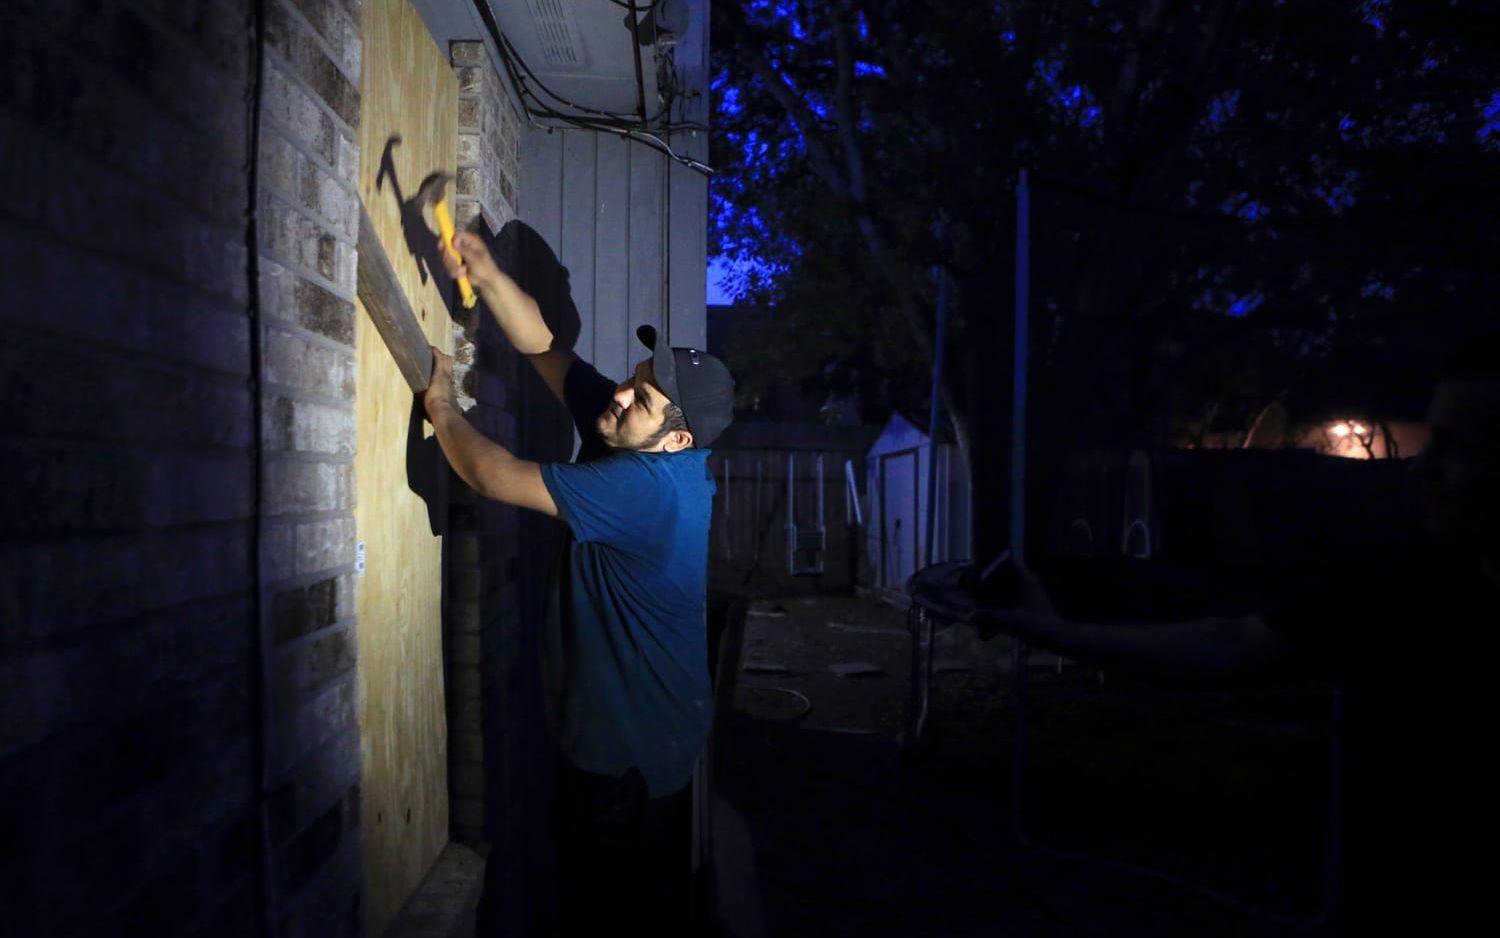 Mauro Eligio spikar för sina fönster i staden Sorpus Christi, Texas. Bild: TT